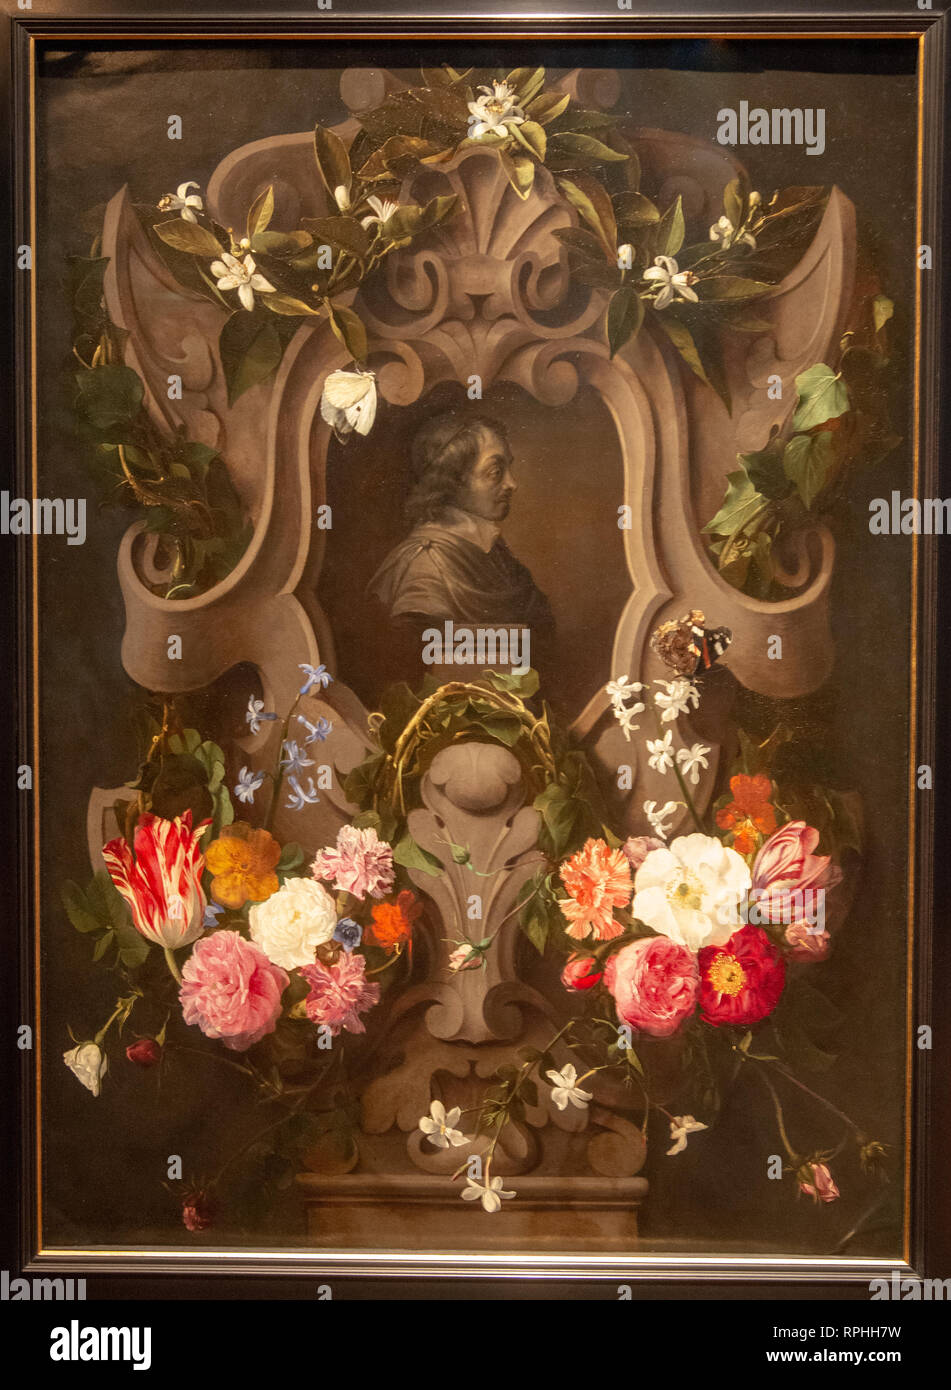 Büste von Constantijn Huygens in einem floralen Kartusche von Maler Daniel seghers & Jan cossiers Stockfoto